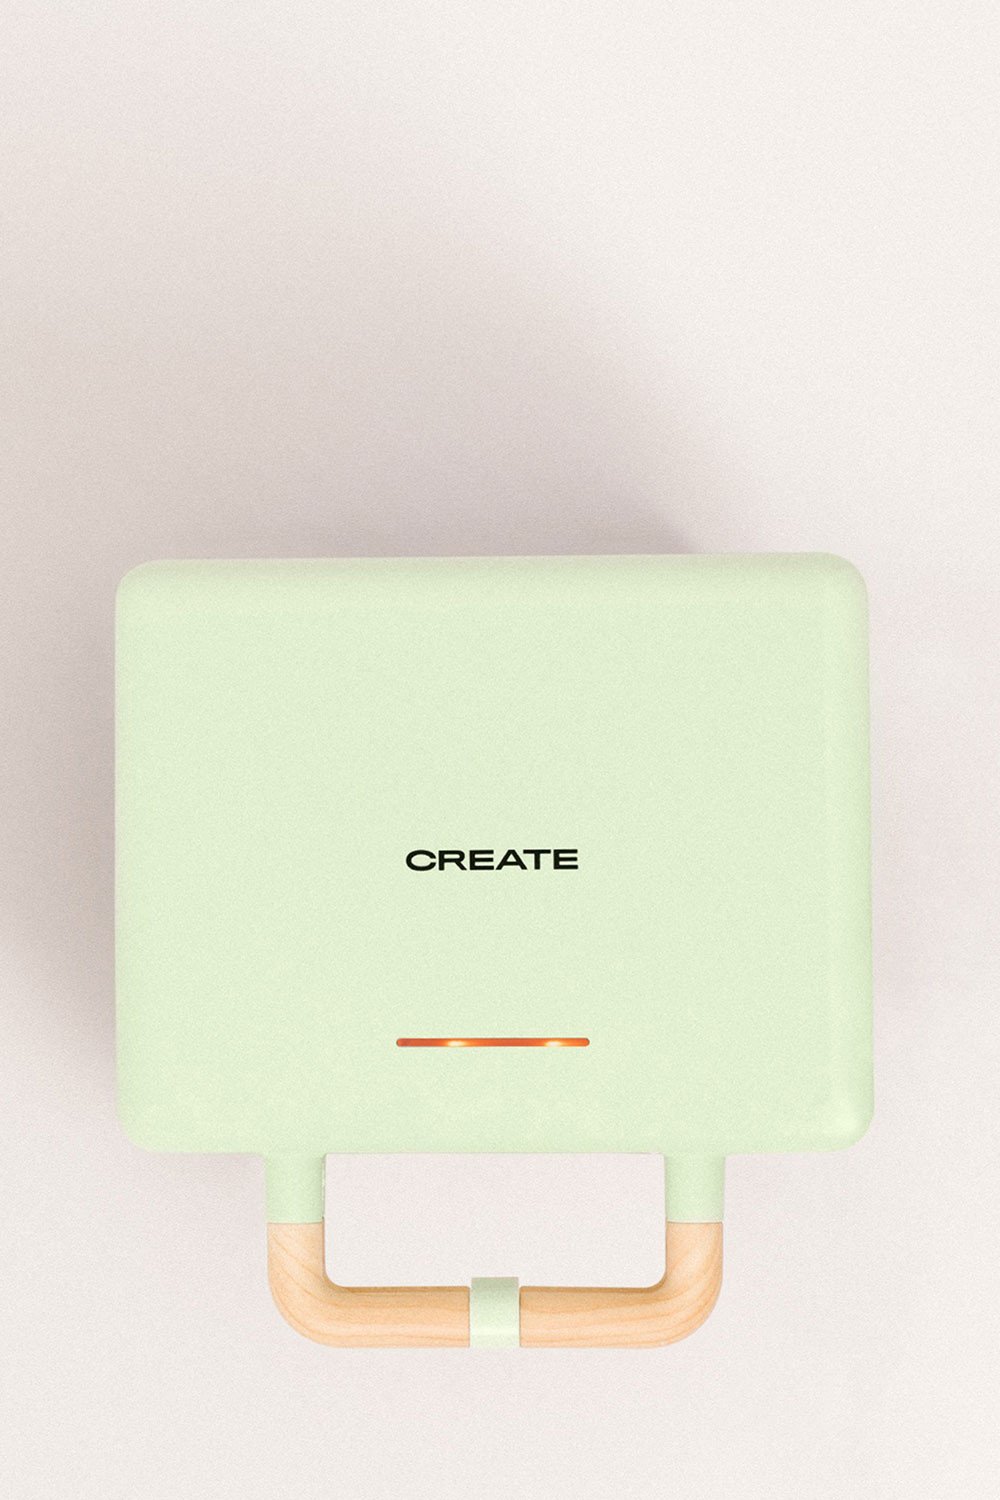 CREATE - STONE 3 EM 1 STUDIO - Sanduicheira Grill e máquina de waffles com placas intercambiáveis - Criar, imagem de galeria 1